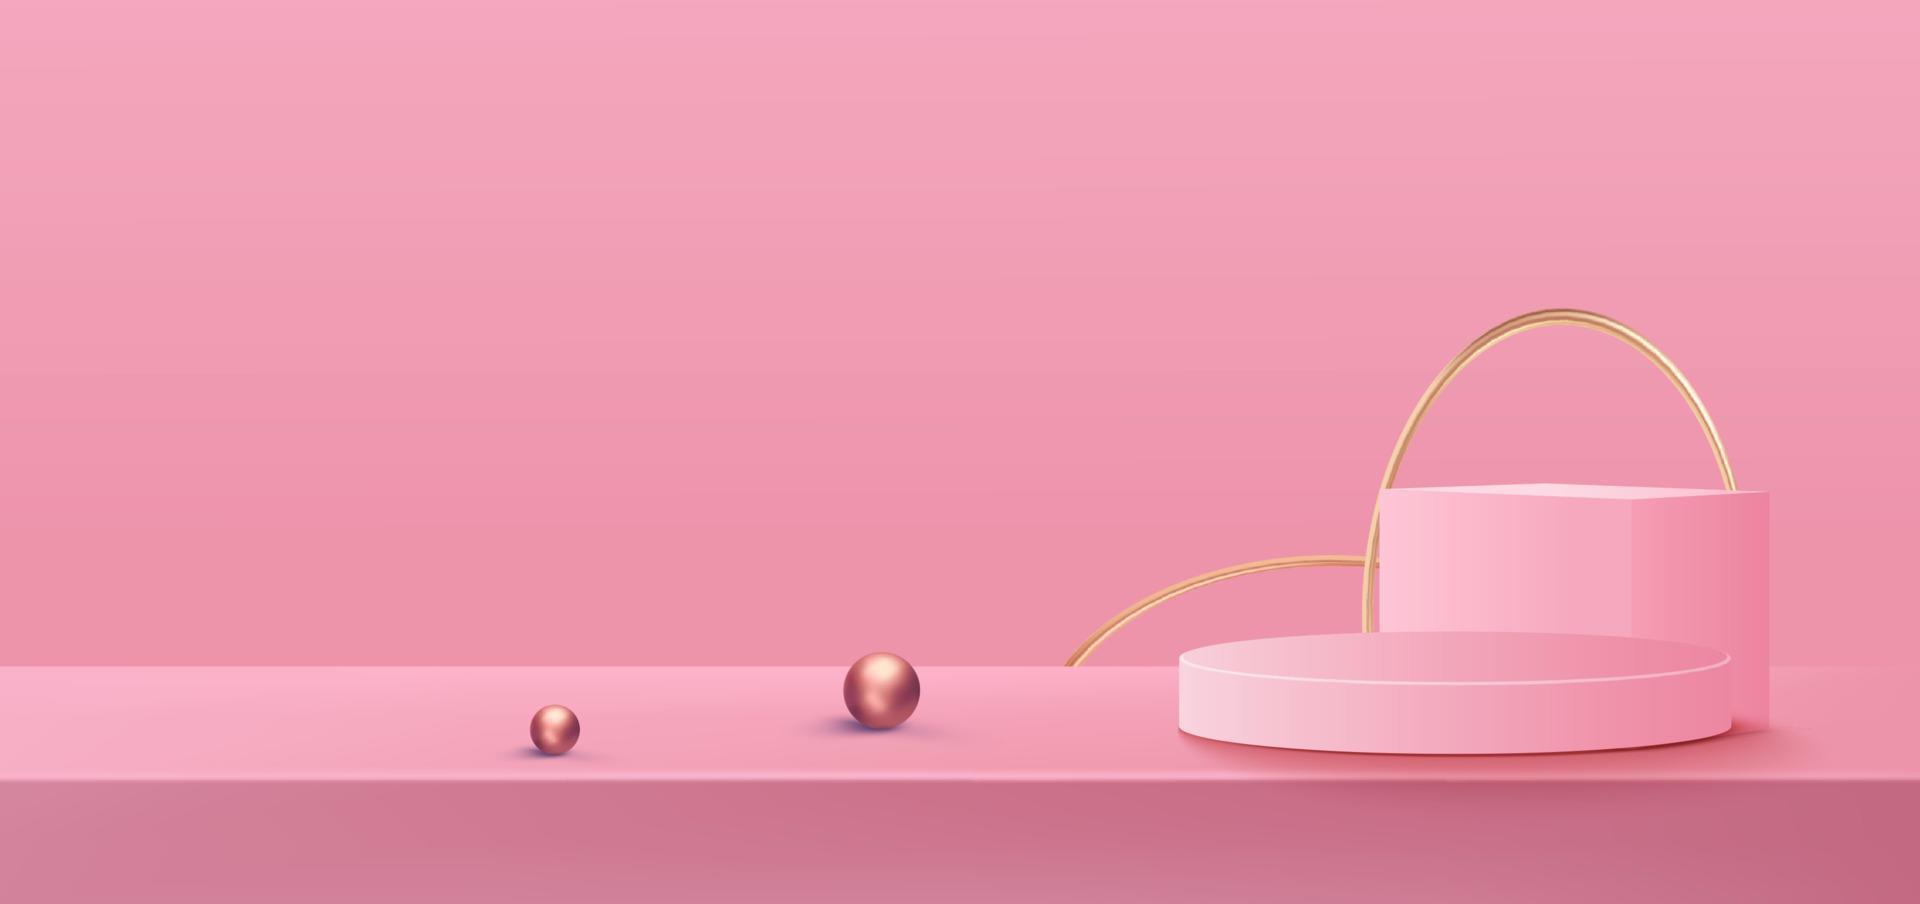 3d roze podium vectorconcept als achtergrond, geschikt voor romantisch ontwerp als achtergrond, sjabloon, valentijnsbanner vector